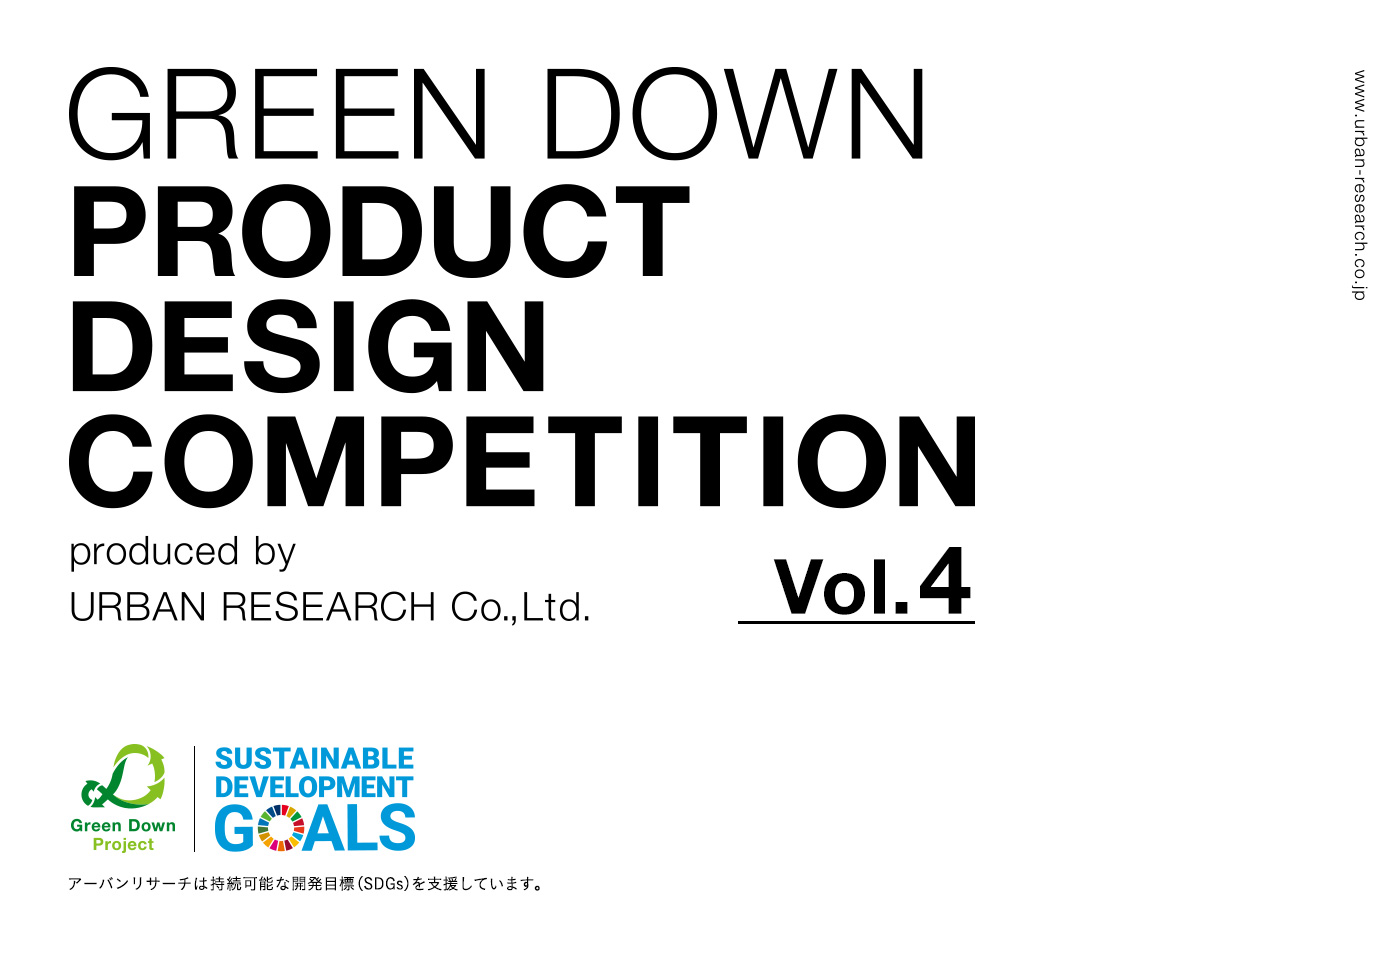 第四回GREEN DOWN PRODUCT DESIGN COMPETITION受賞作品発表